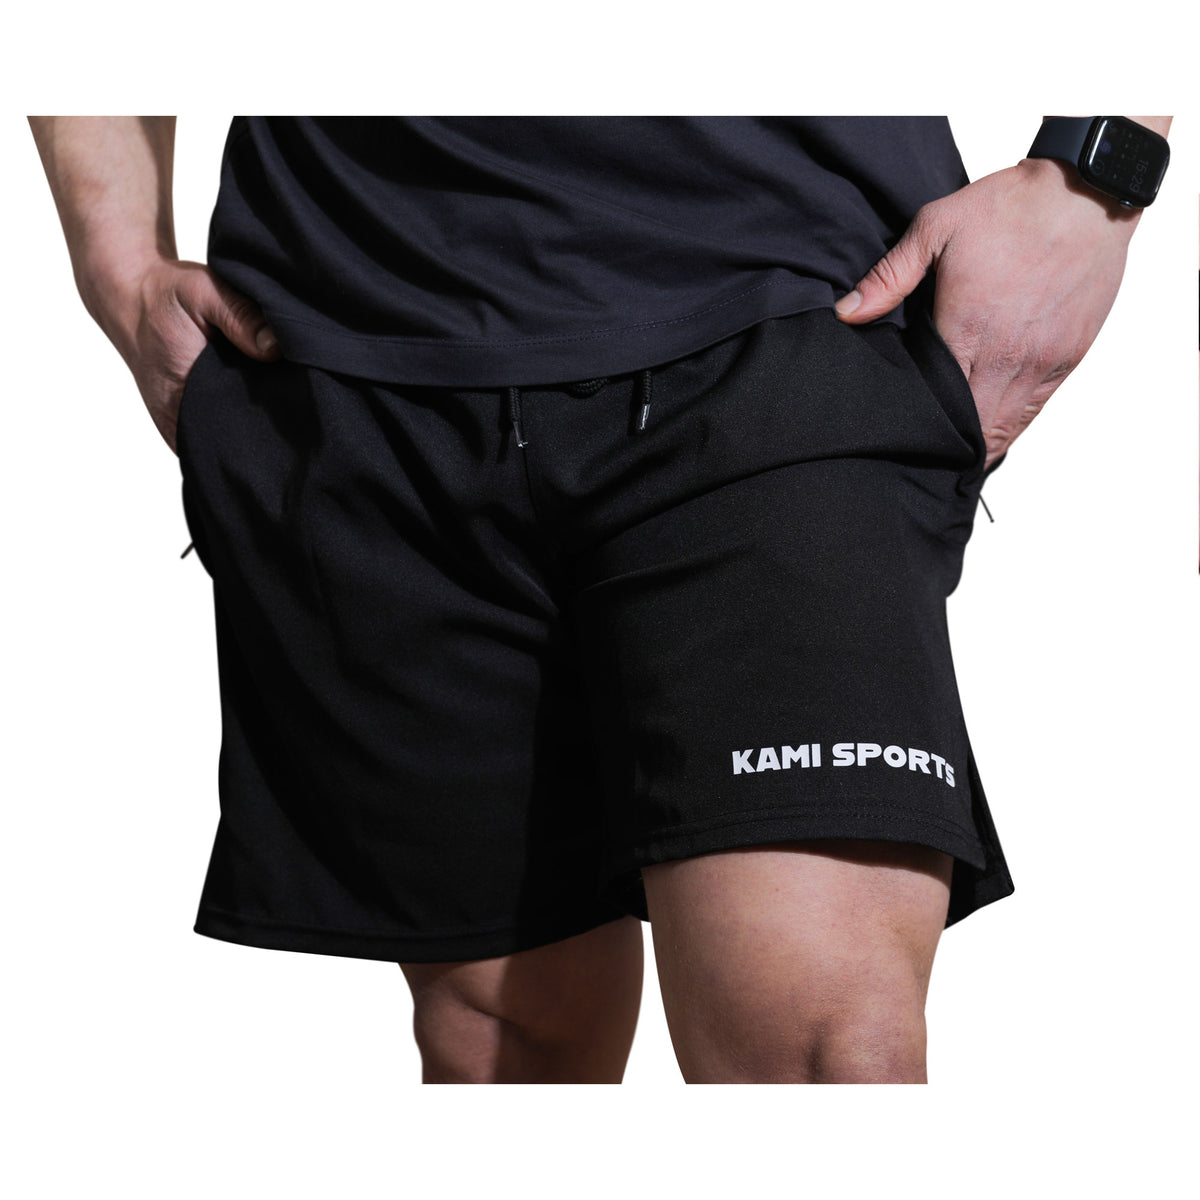 Frontansicht einer multifunktionalen Sport- und Freizeithose von Kami Sport, ausgestattet mit Reißverschlusstaschen und einer integrierten Smartphone-Tasche. Die Hose ist für Flexibilität und Komfort beim Tragen konzipiert.